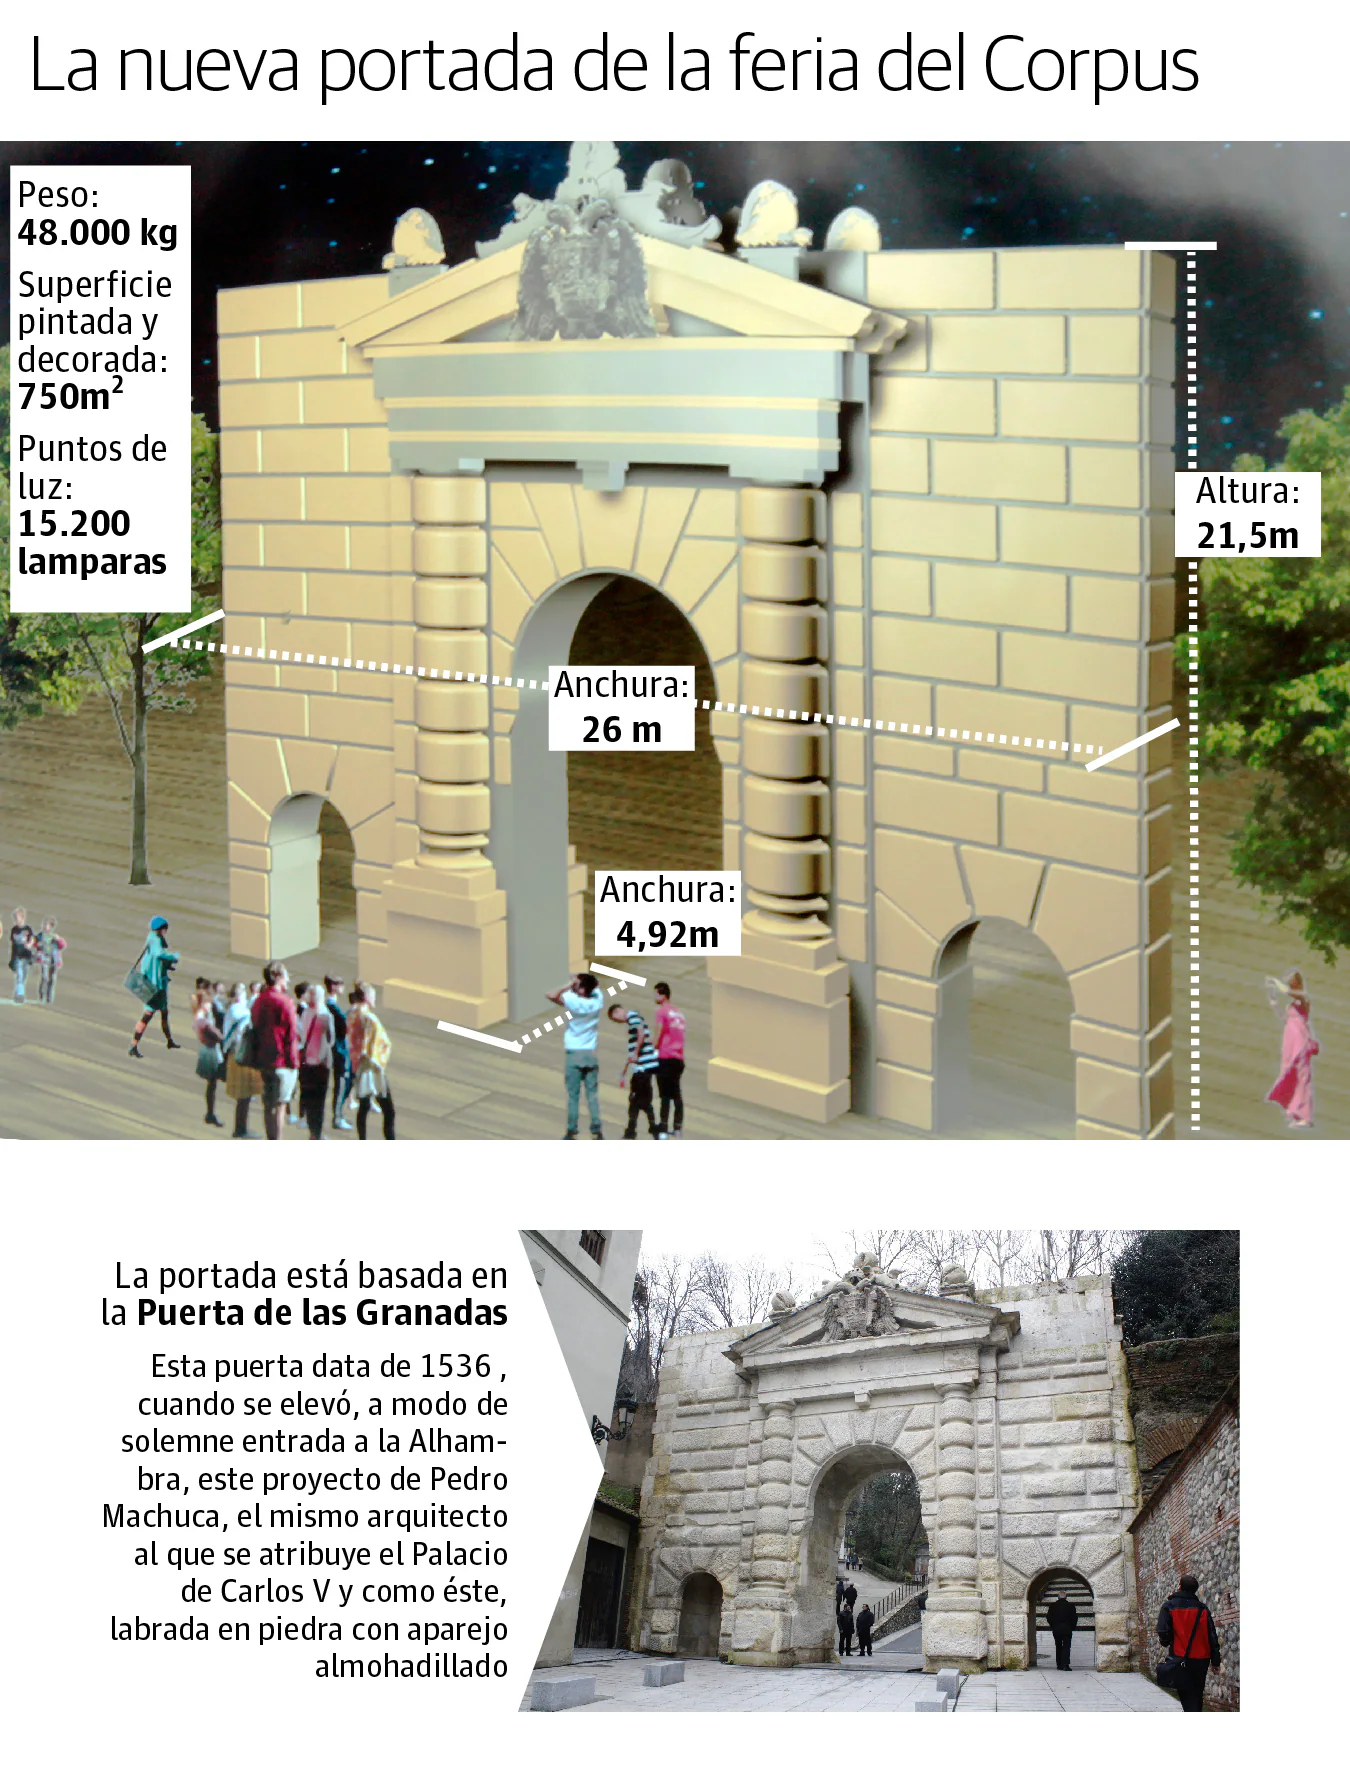 La nueva portada del ferial representará la Puerta de las Granadas, sita en la cuesta Gómerez. La instalación ha sido diseñada con una anchura de 26 metros y 21,5 de altura. Una gran estructura que tiene en algunas partes casi cinco metros de grosor.